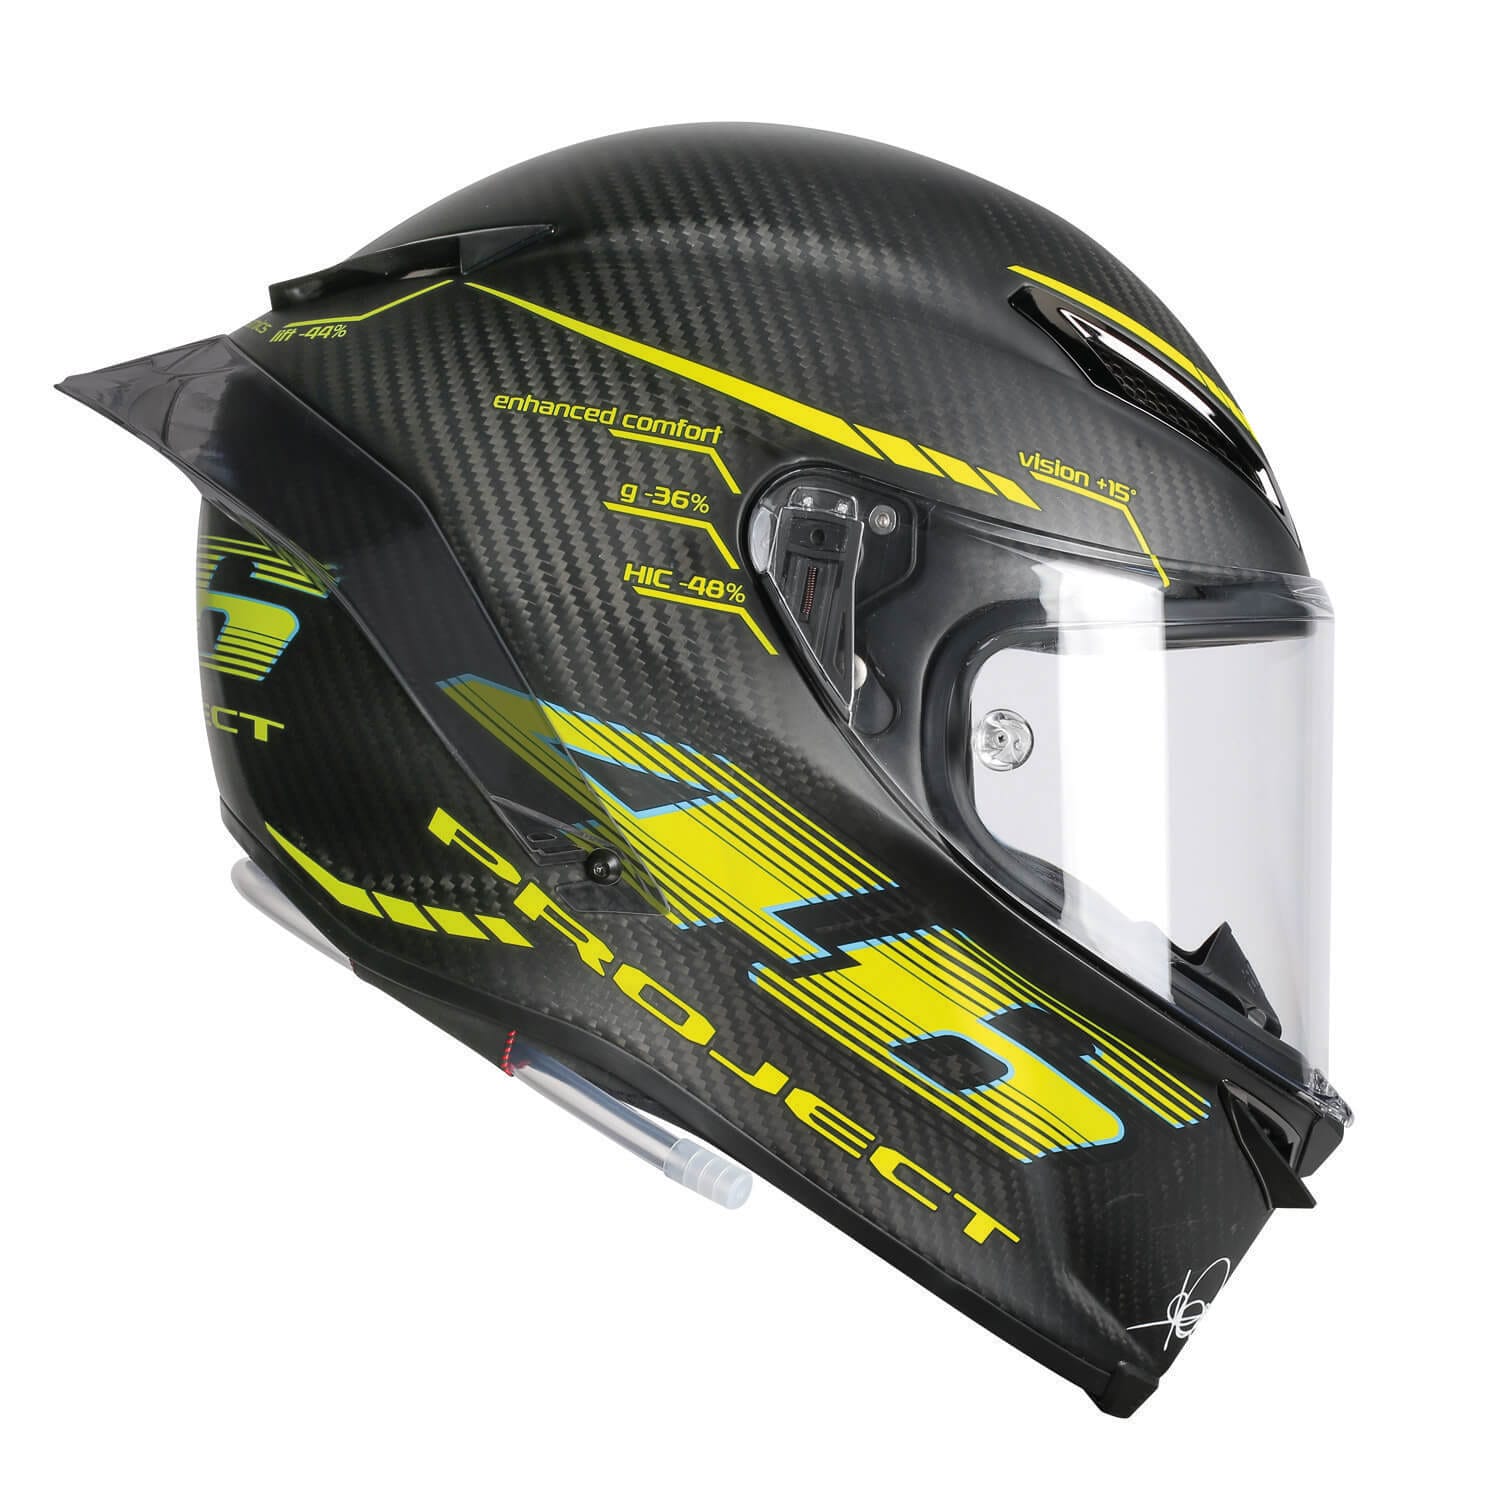 AGV Pista GP R – Motorcycle helmet from MotoGP